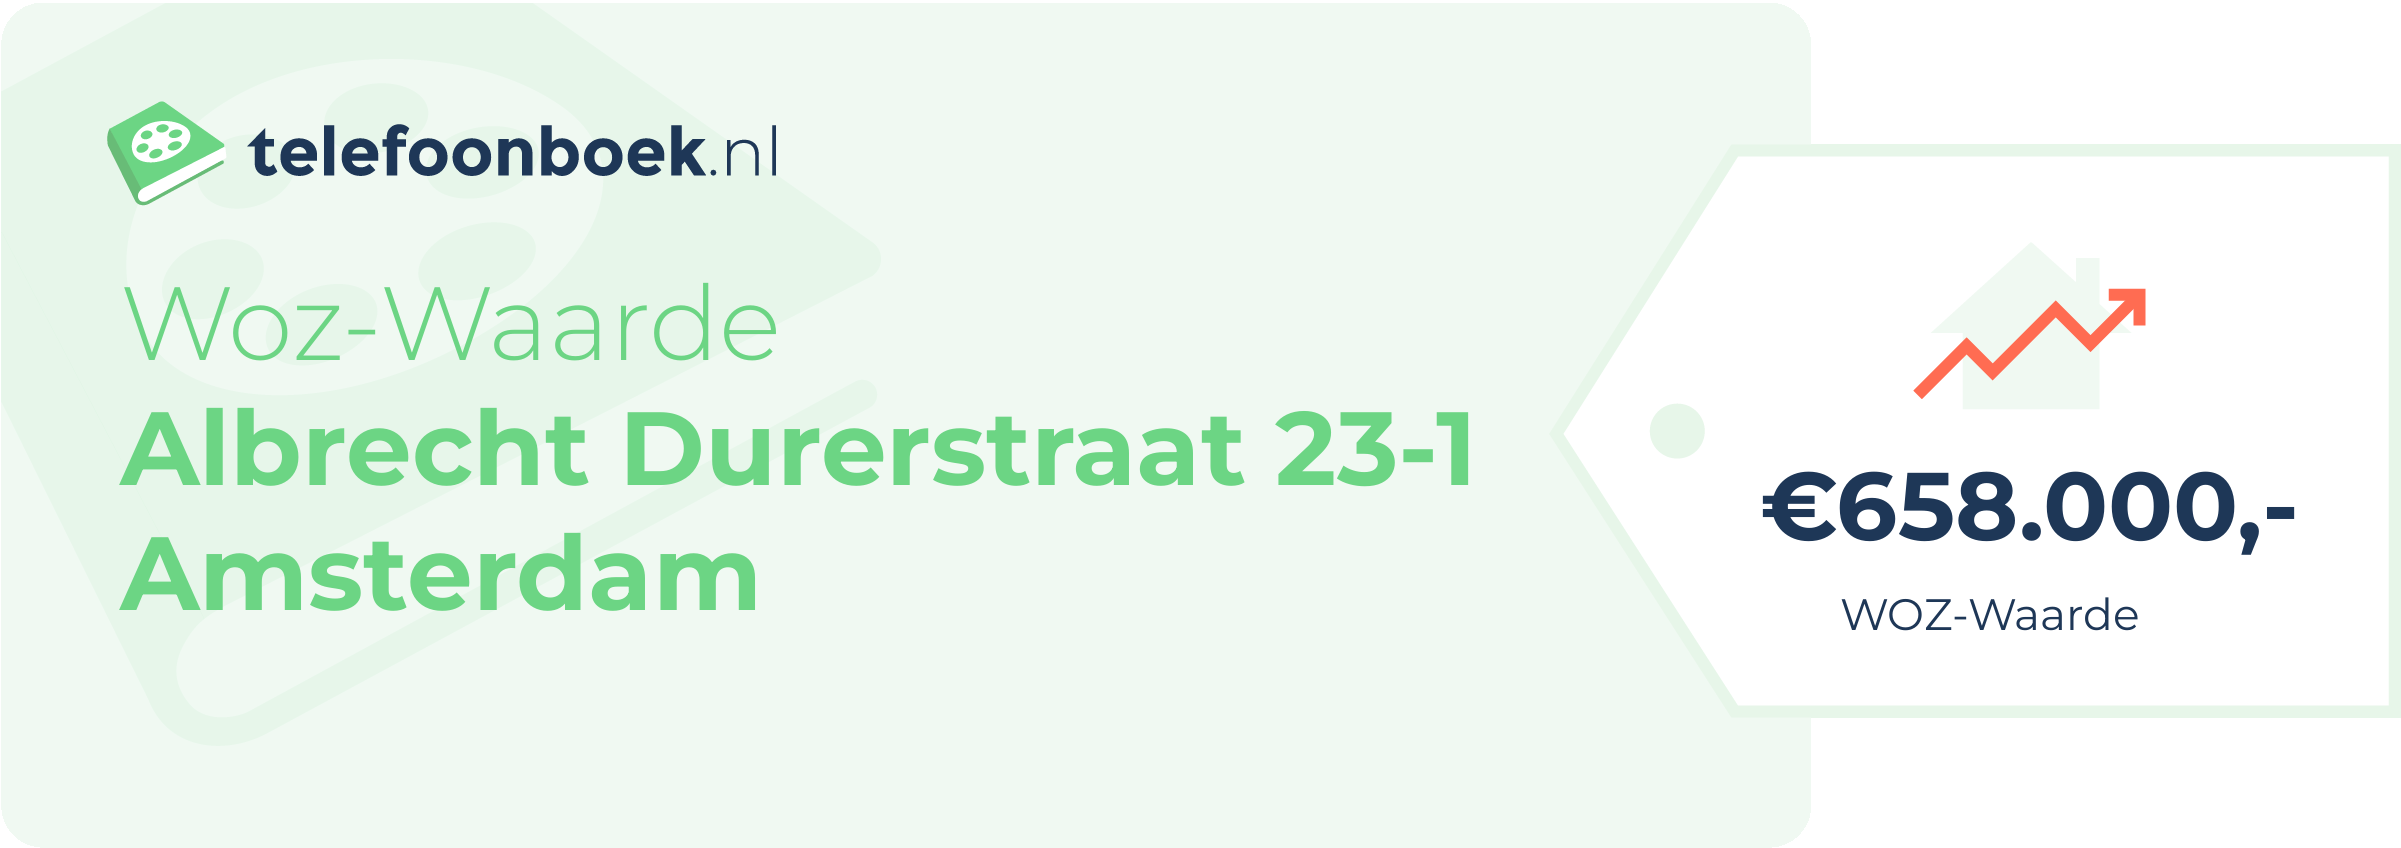 WOZ-waarde Albrecht Durerstraat 23-1 Amsterdam